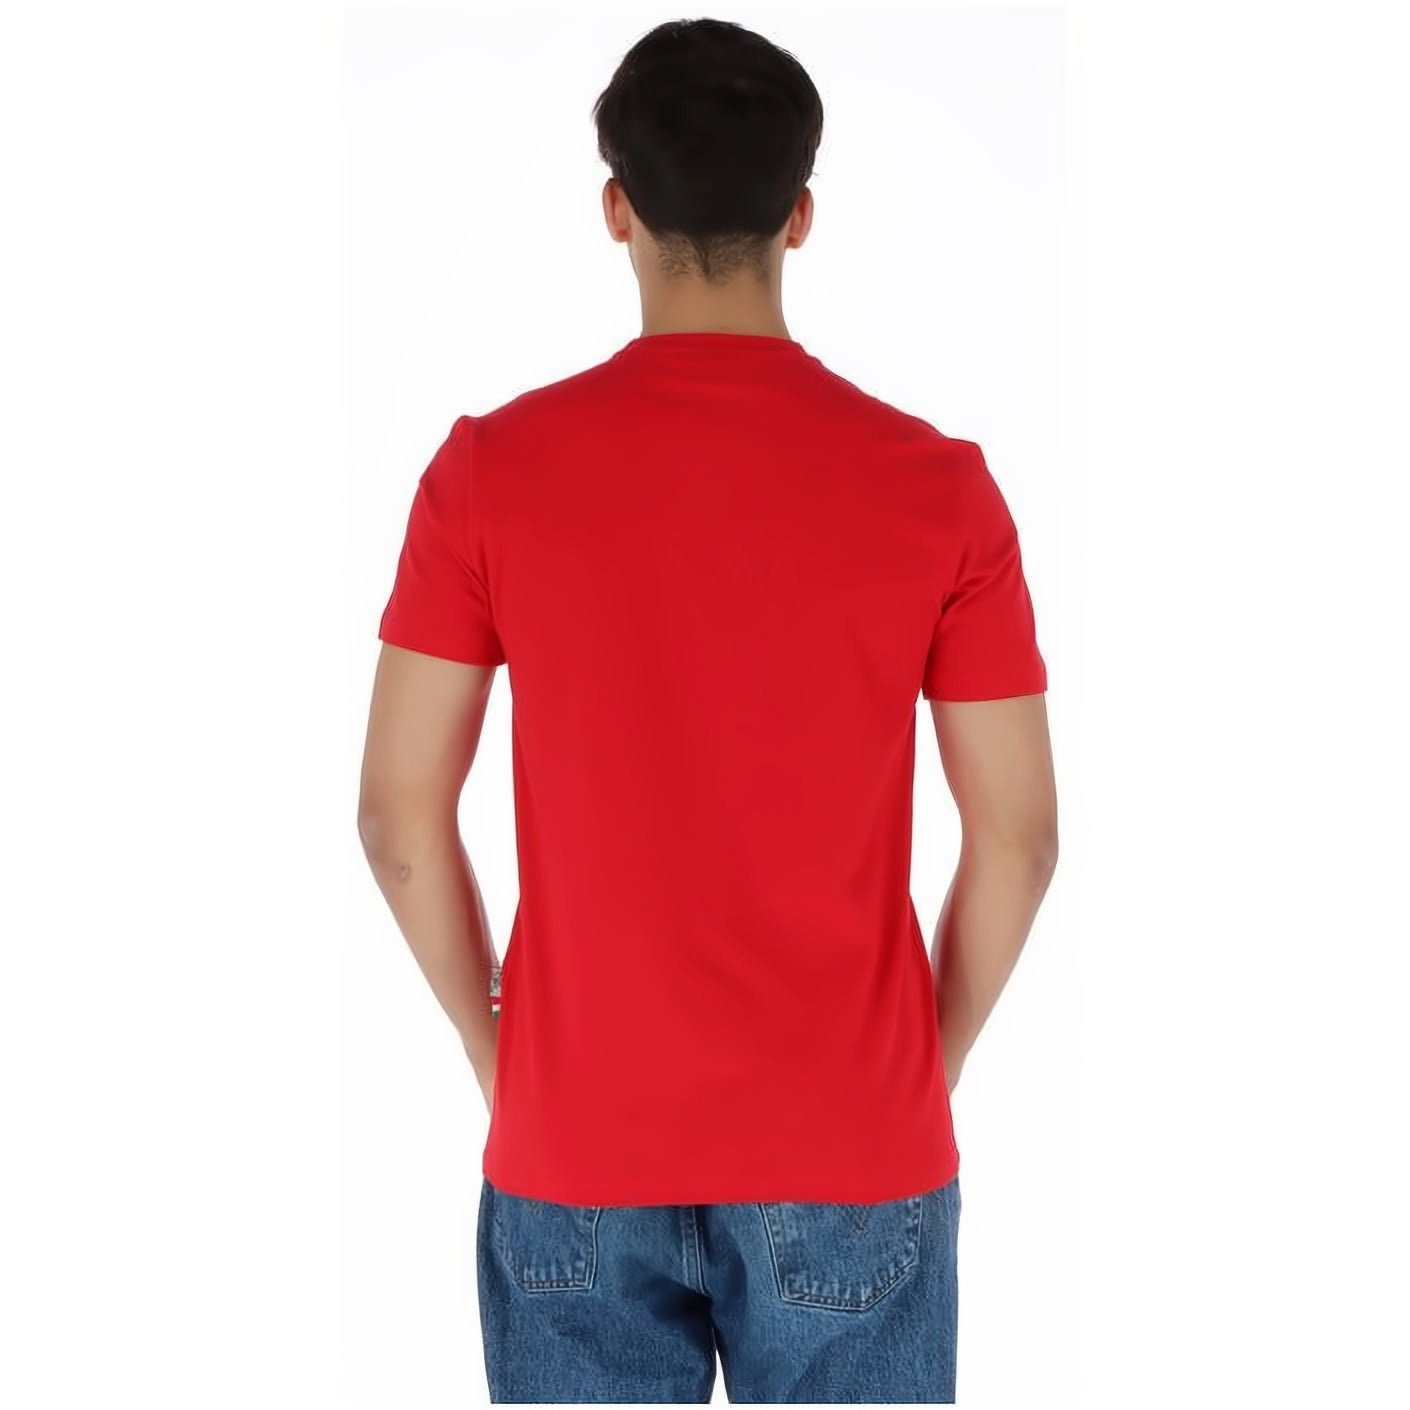 Stylischer T-Shirt PLEIN NECK vielfältige ROUND Farbauswahl SPORT Tragekomfort, hoher Look,